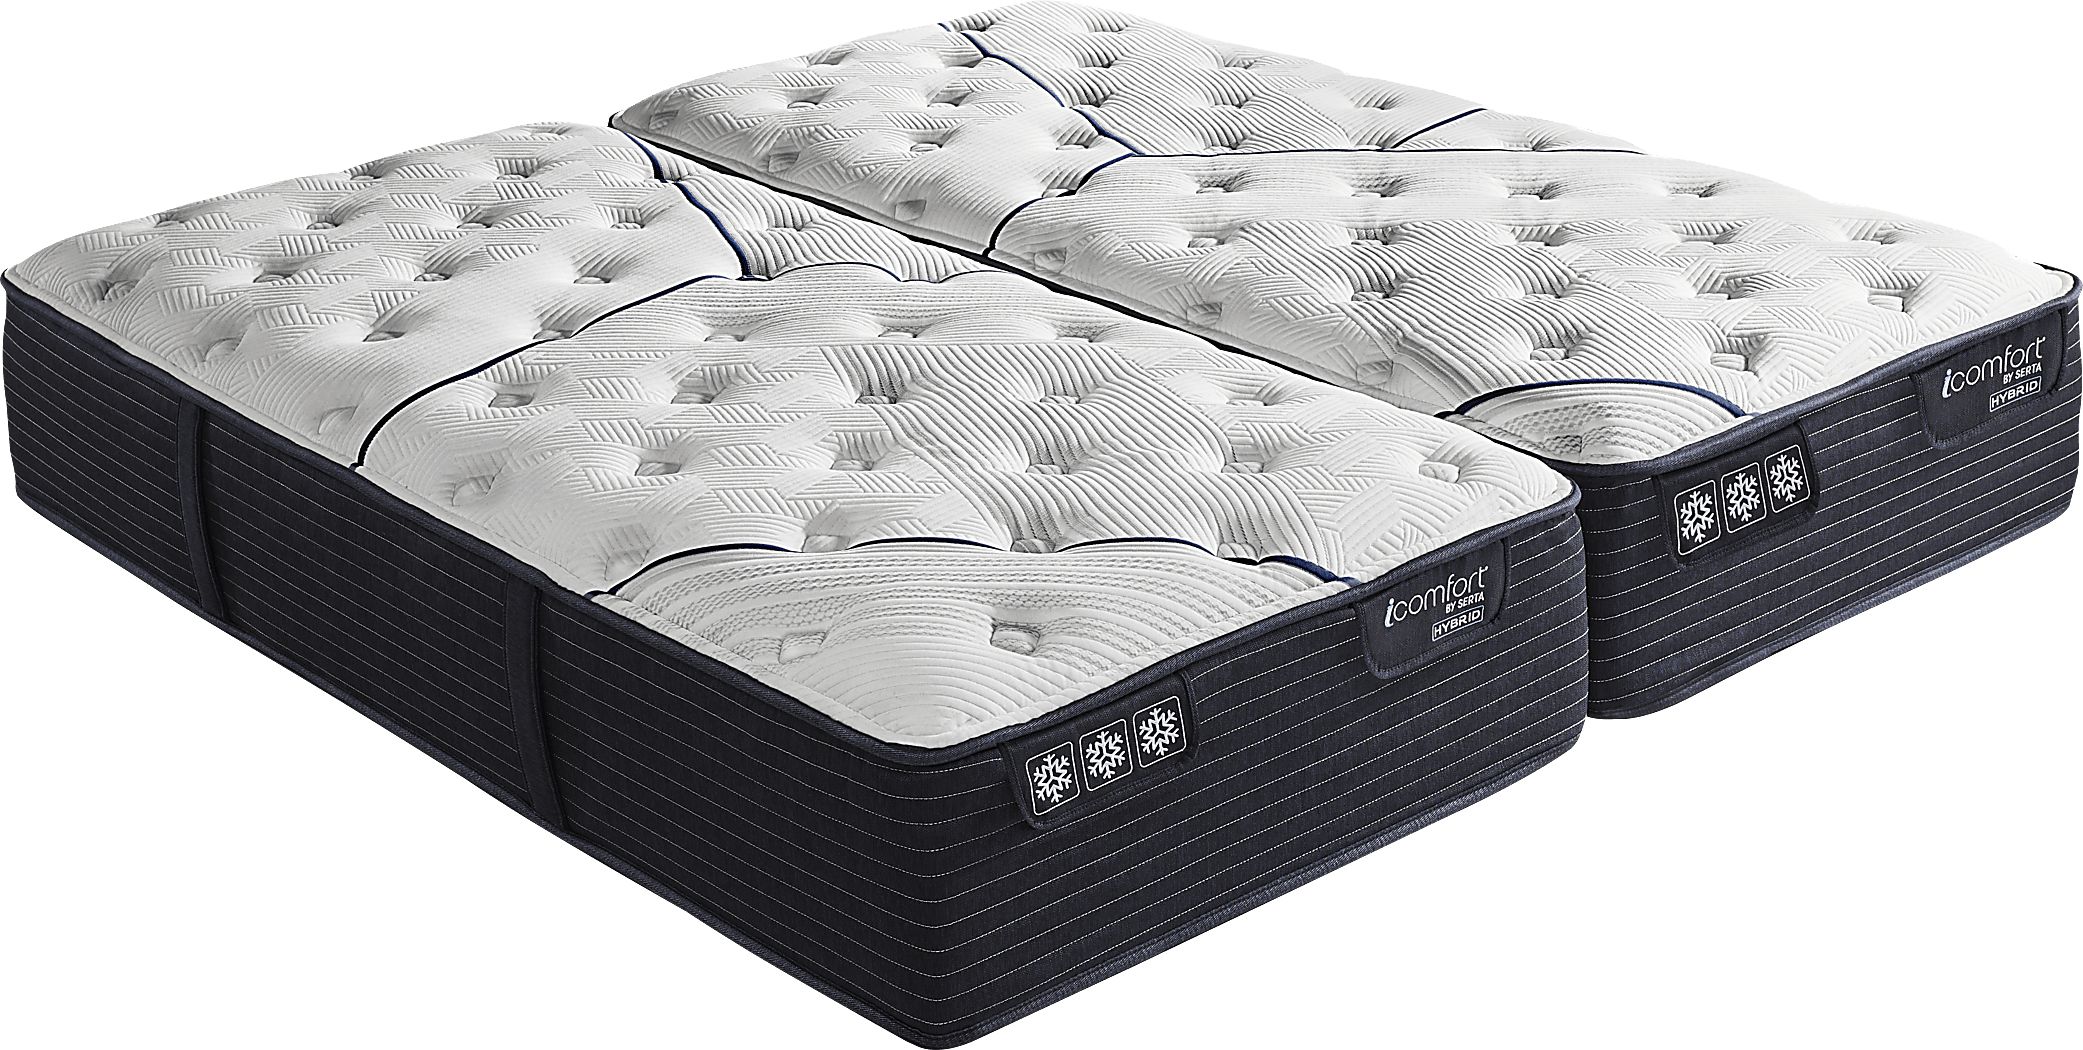 serta icomfort cf3000 mattress stores